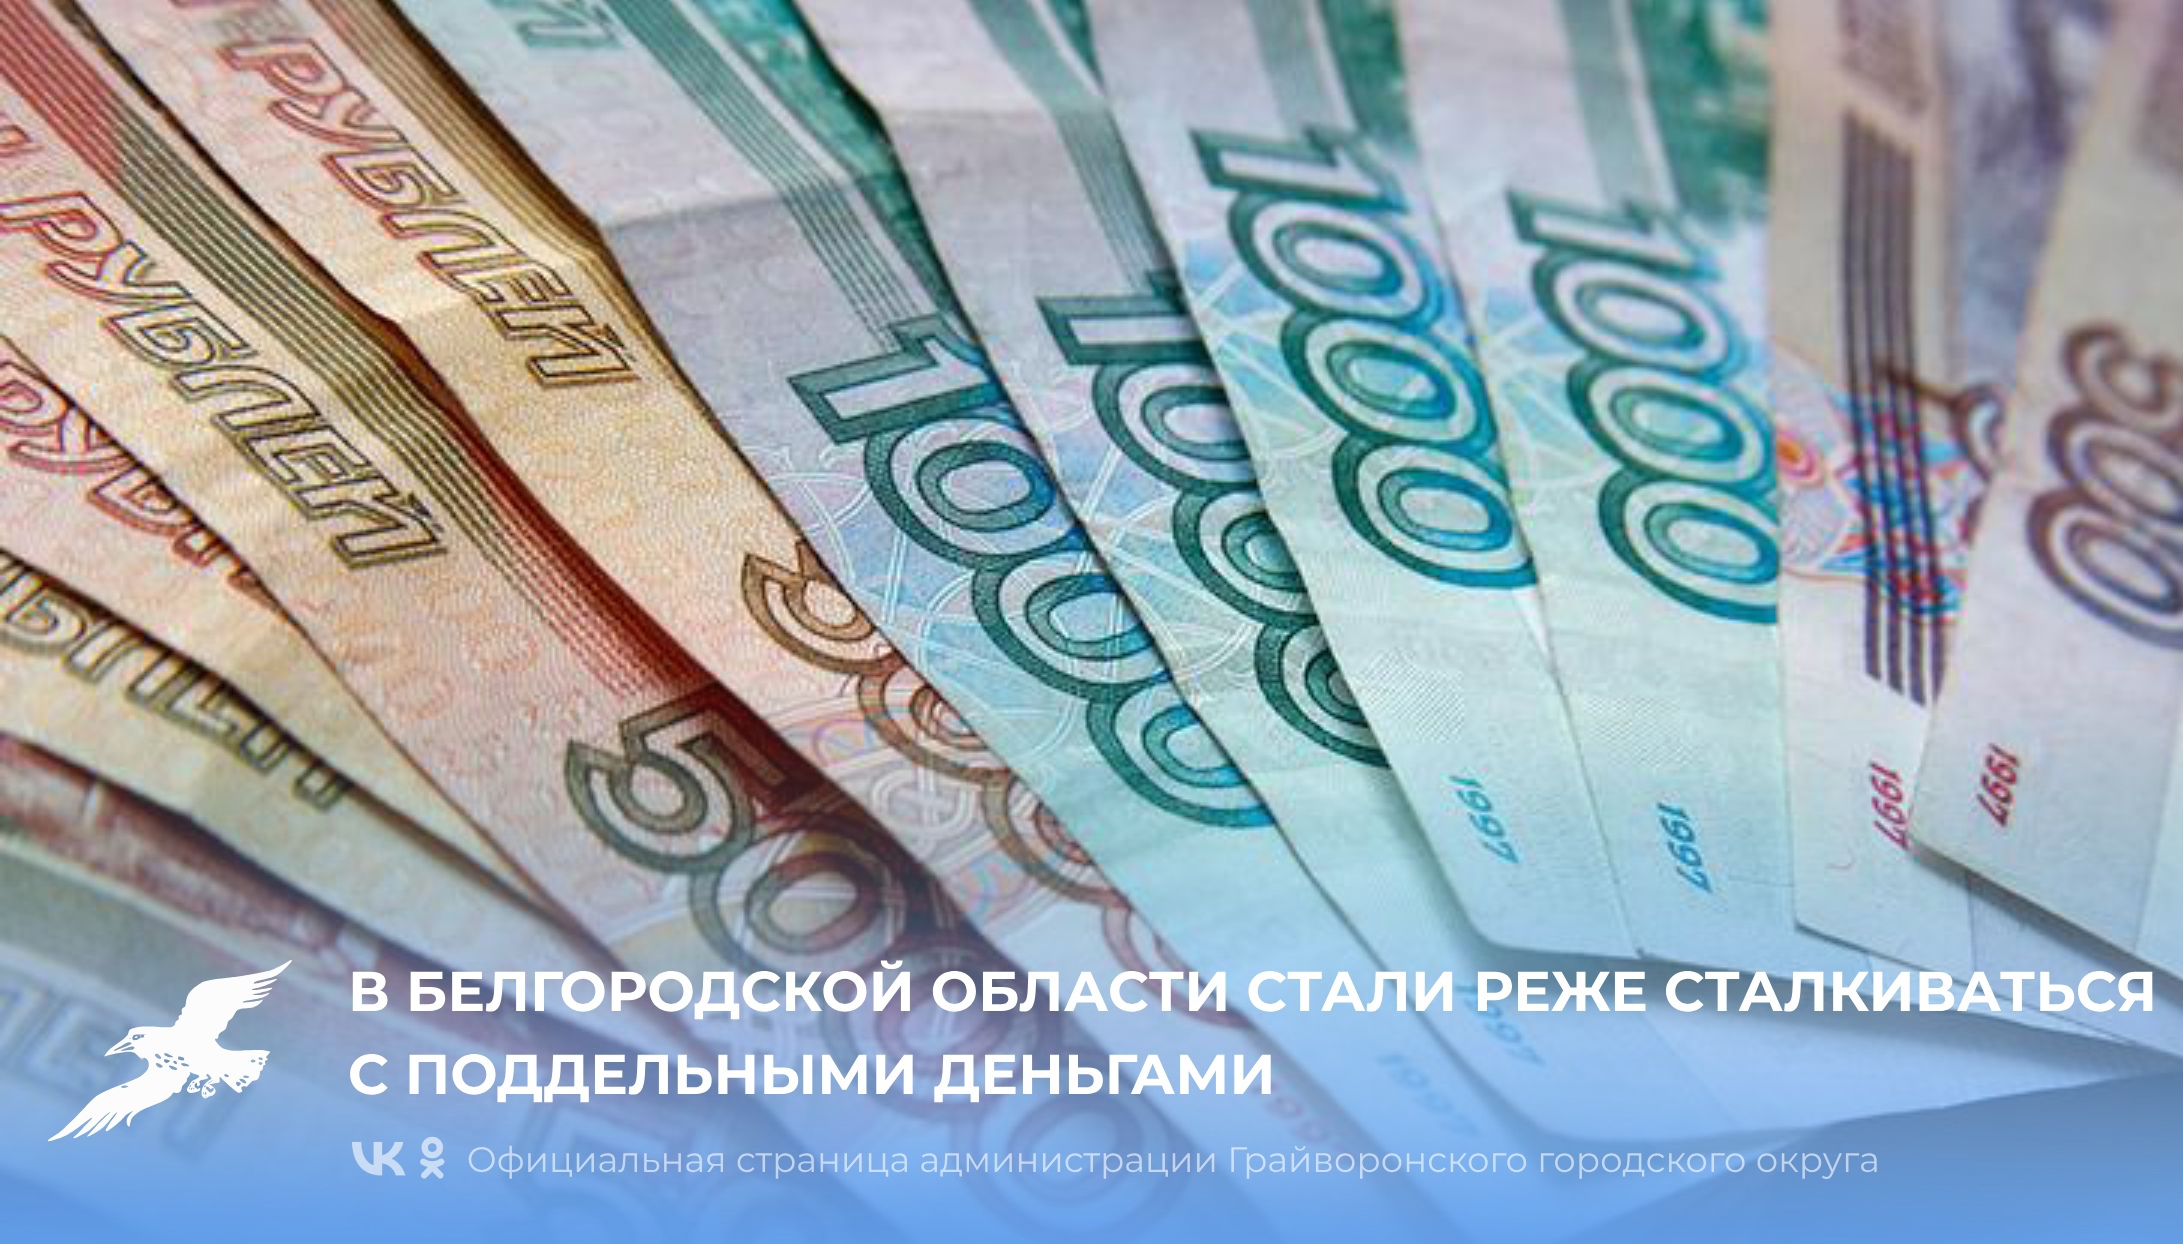 Жители Белгородской области стали реже сталкиваться с поддельными деньгами.